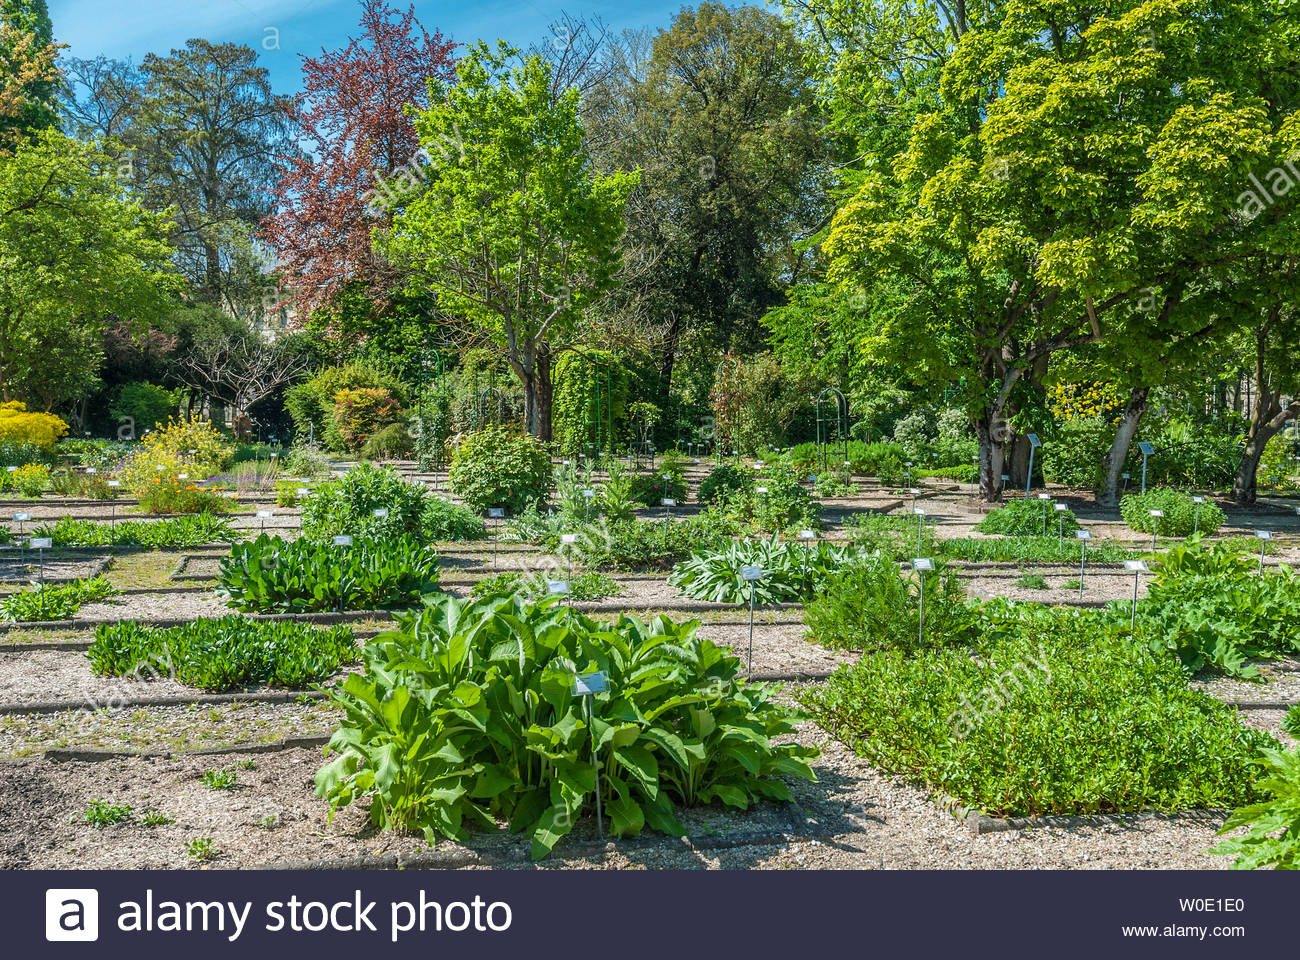 france gironde bordeaux botanical garden of the jardin public W0E1E0